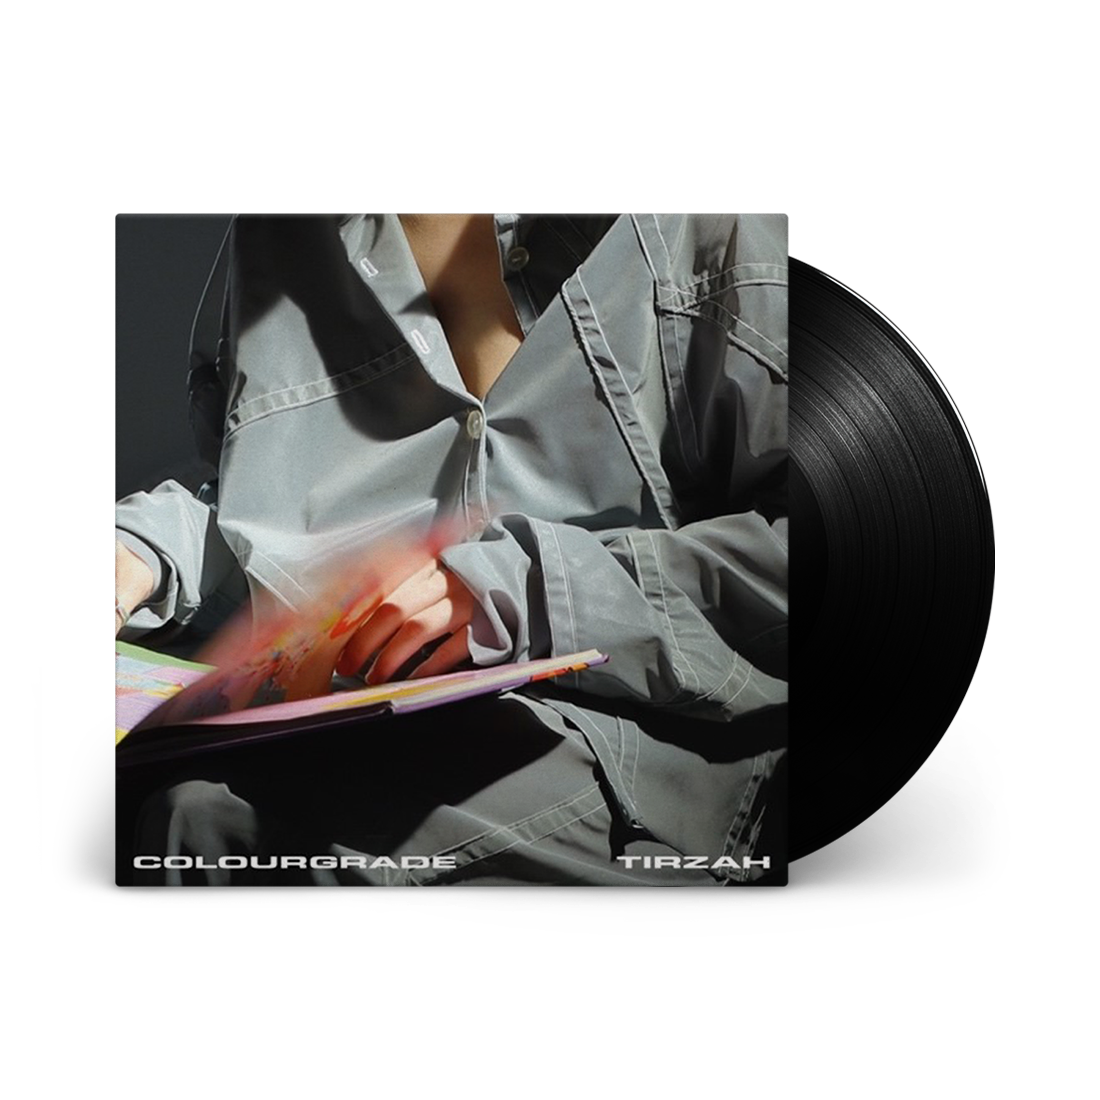 Colourgrade: Vinyl LP